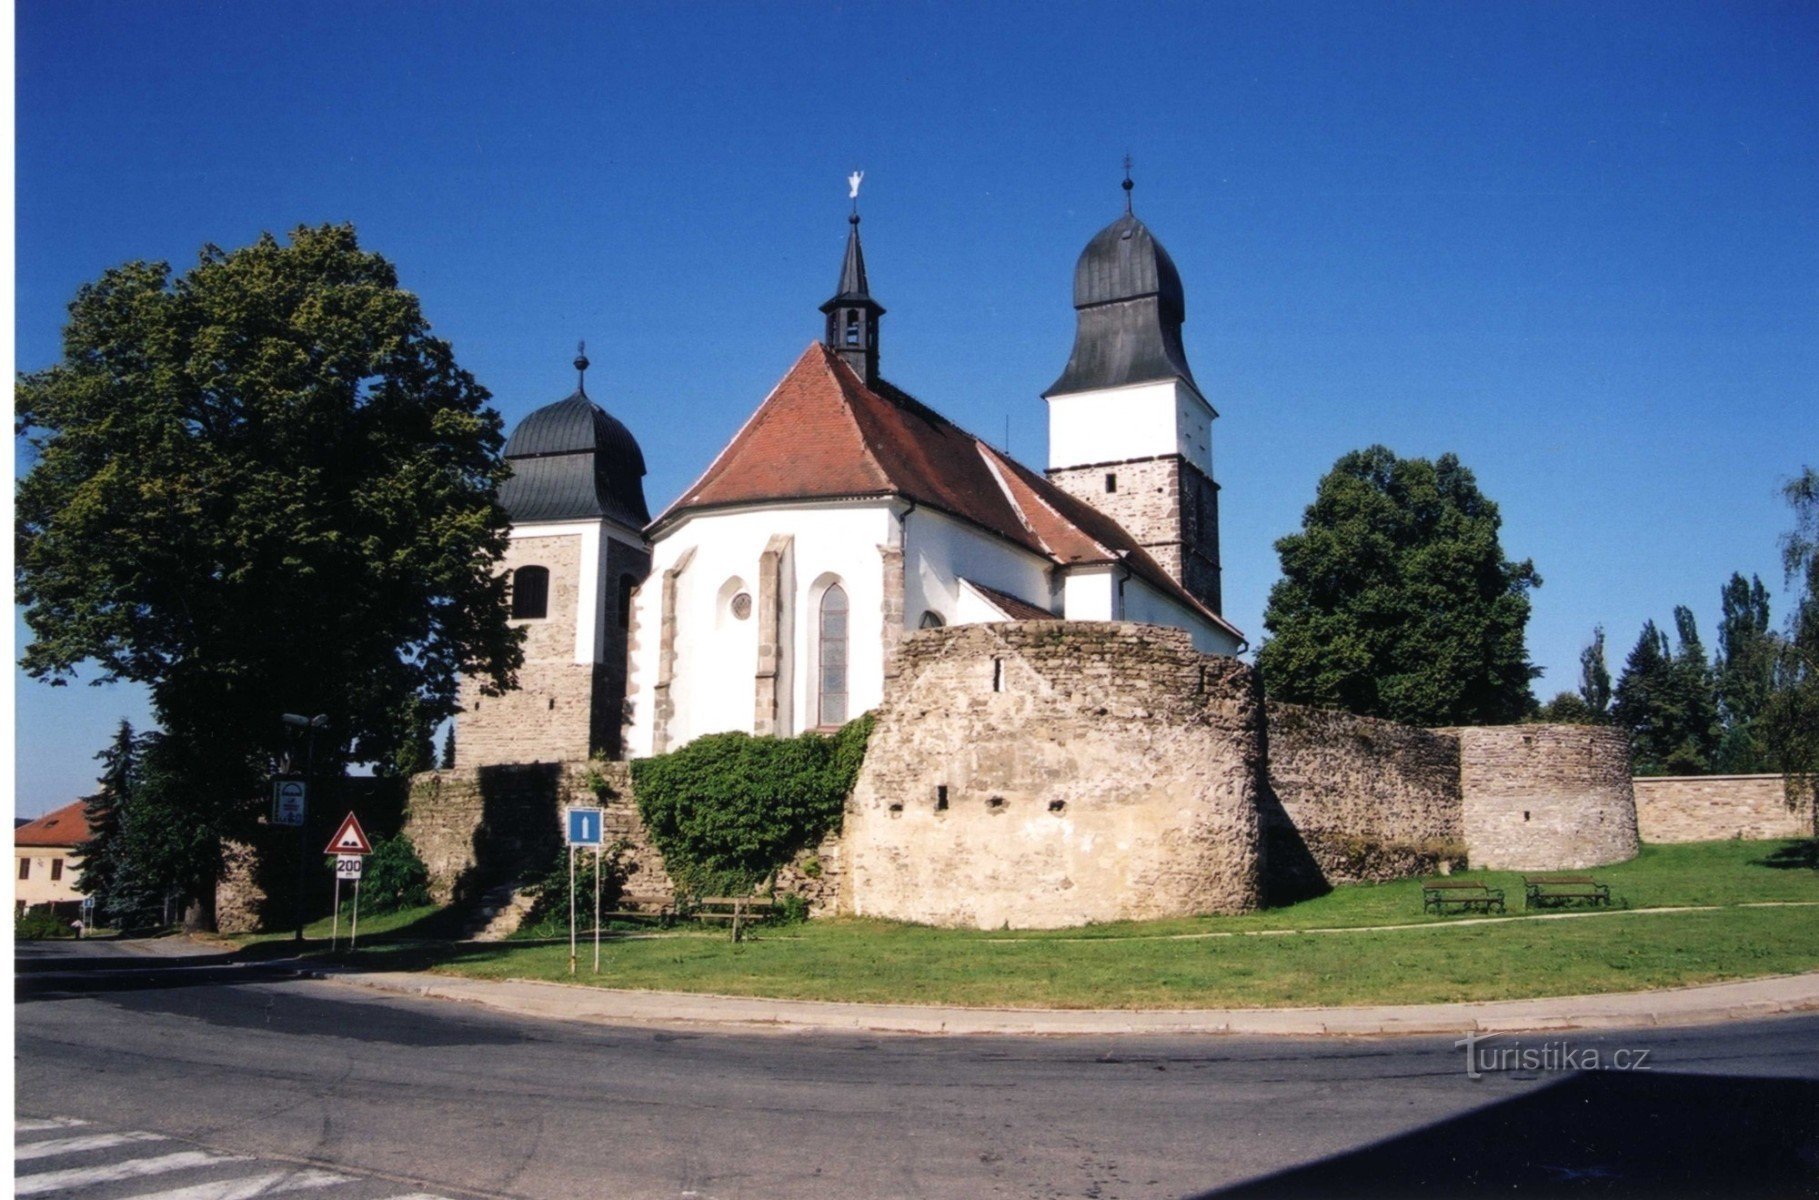 Velká Bíteš - fortified church